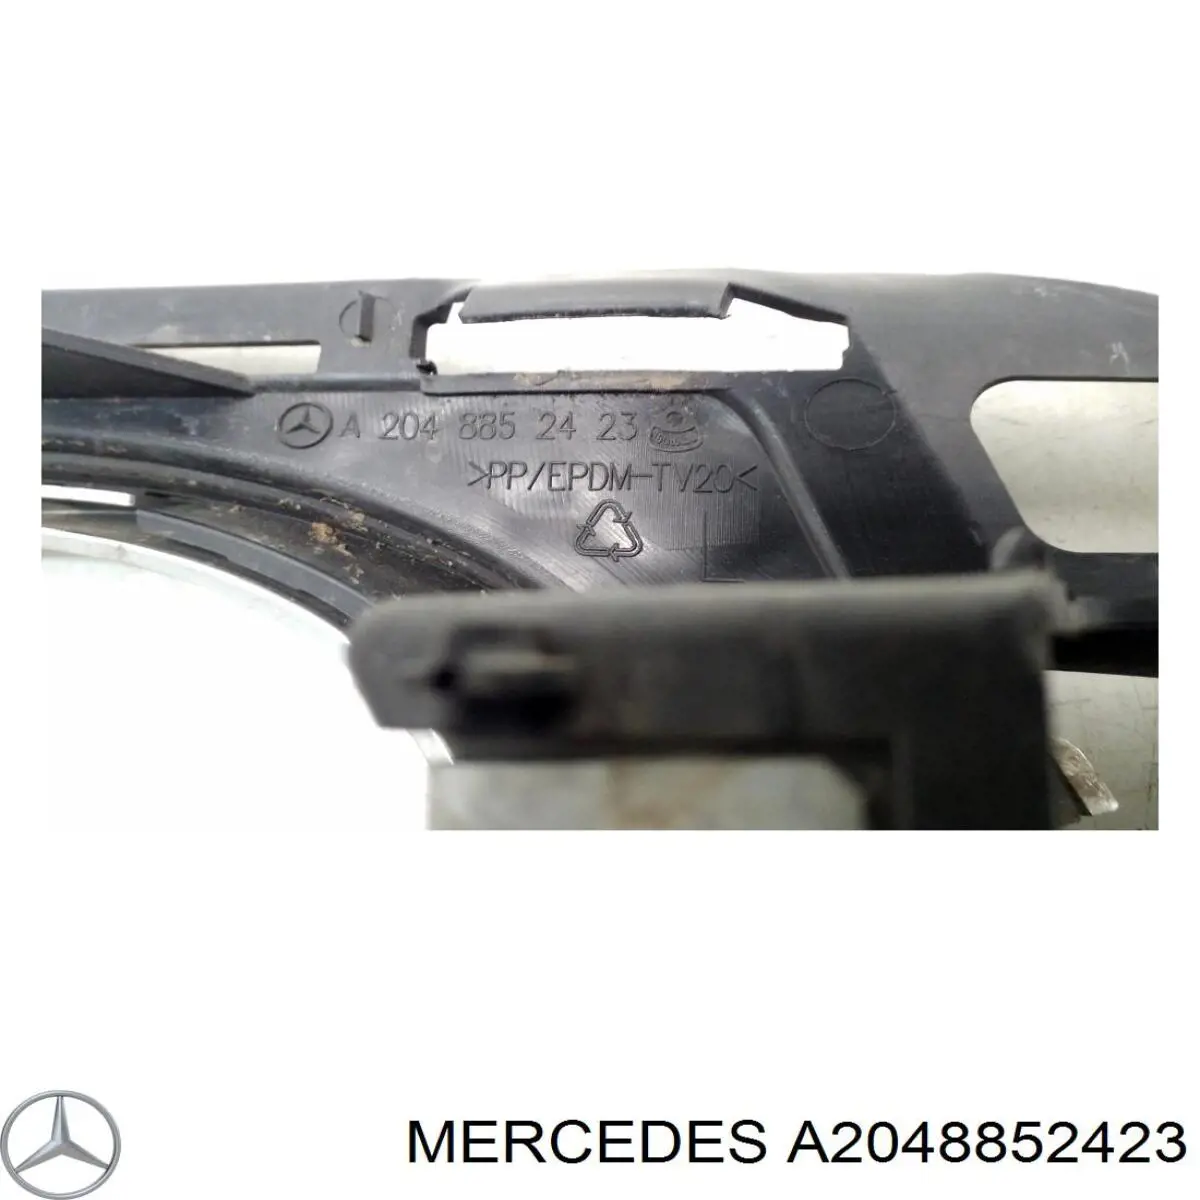 A2048852423 Mercedes rejilla del parachoques delantera izquierda